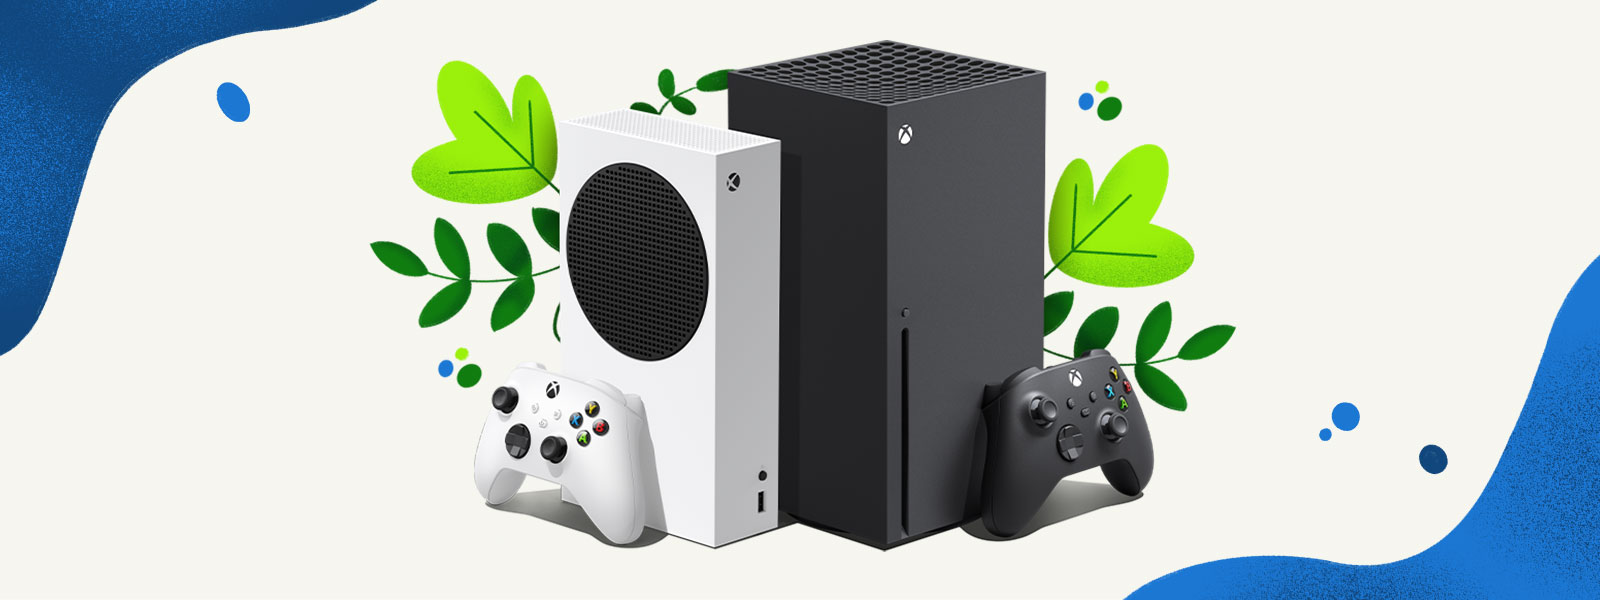 Les consoles Xbox Series X et Xbox Series S sont placées lʼune à côté de lʼautre, avec un arrière-plan décoratif composé de plantes et dʼéclaboussures dʼeau bleue.